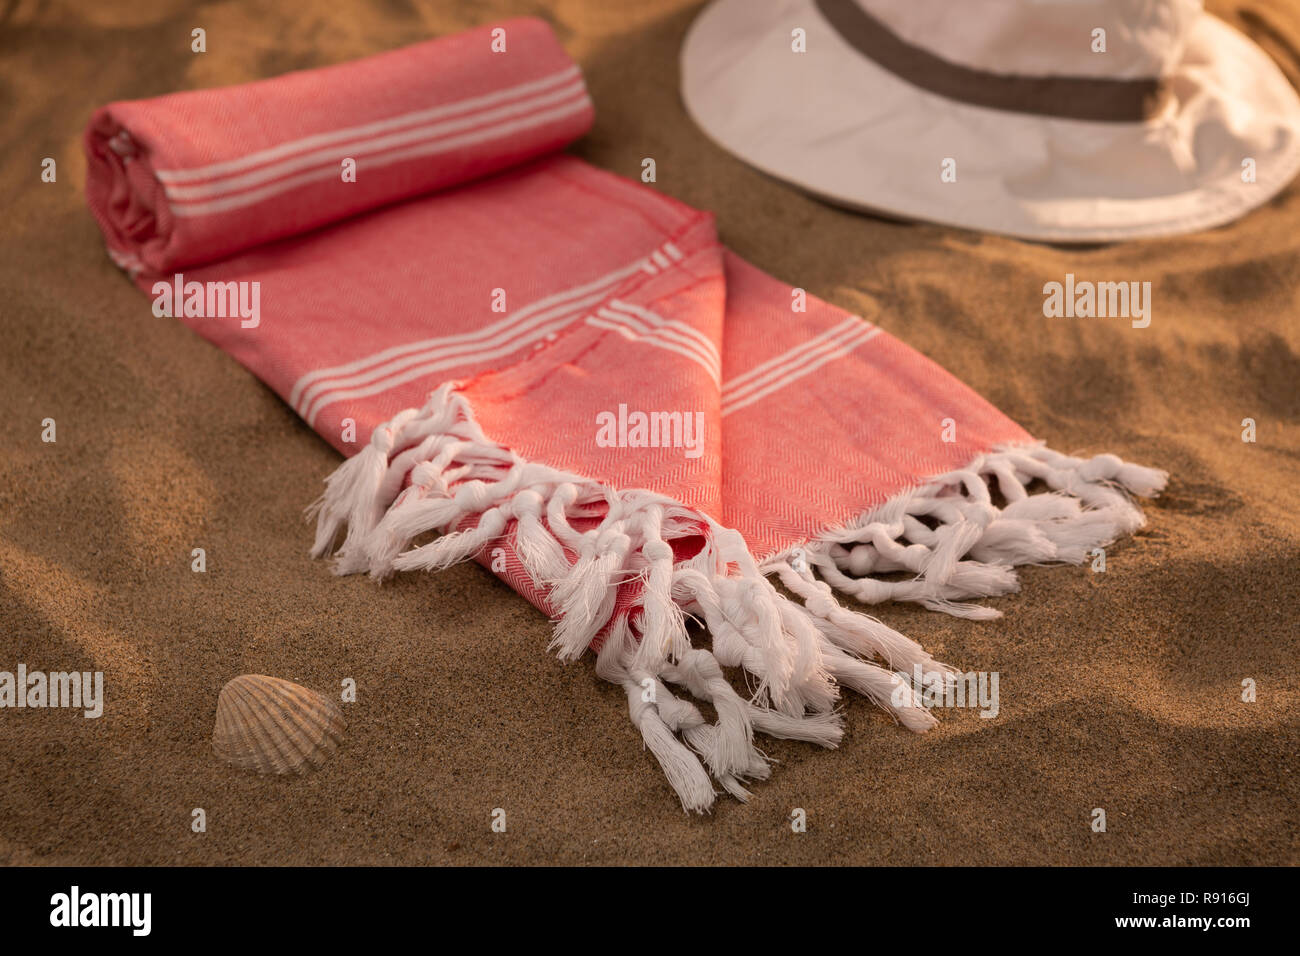 Intrecciato hammam turco asciugamani di cotone sulla spiaggia Foto Stock